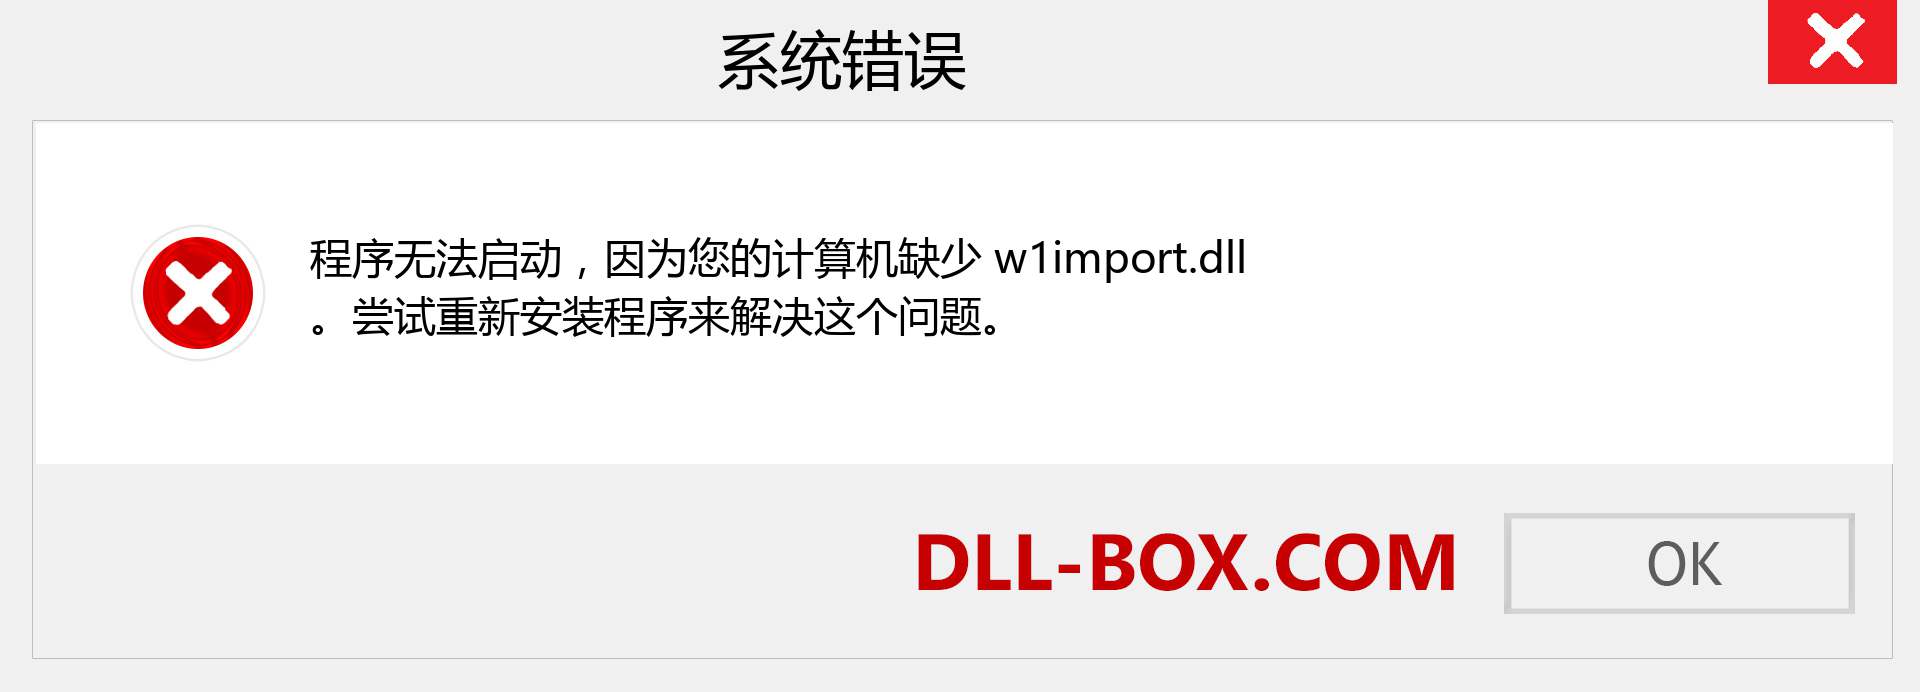 w1import.dll 文件丢失？。 适用于 Windows 7、8、10 的下载 - 修复 Windows、照片、图像上的 w1import dll 丢失错误